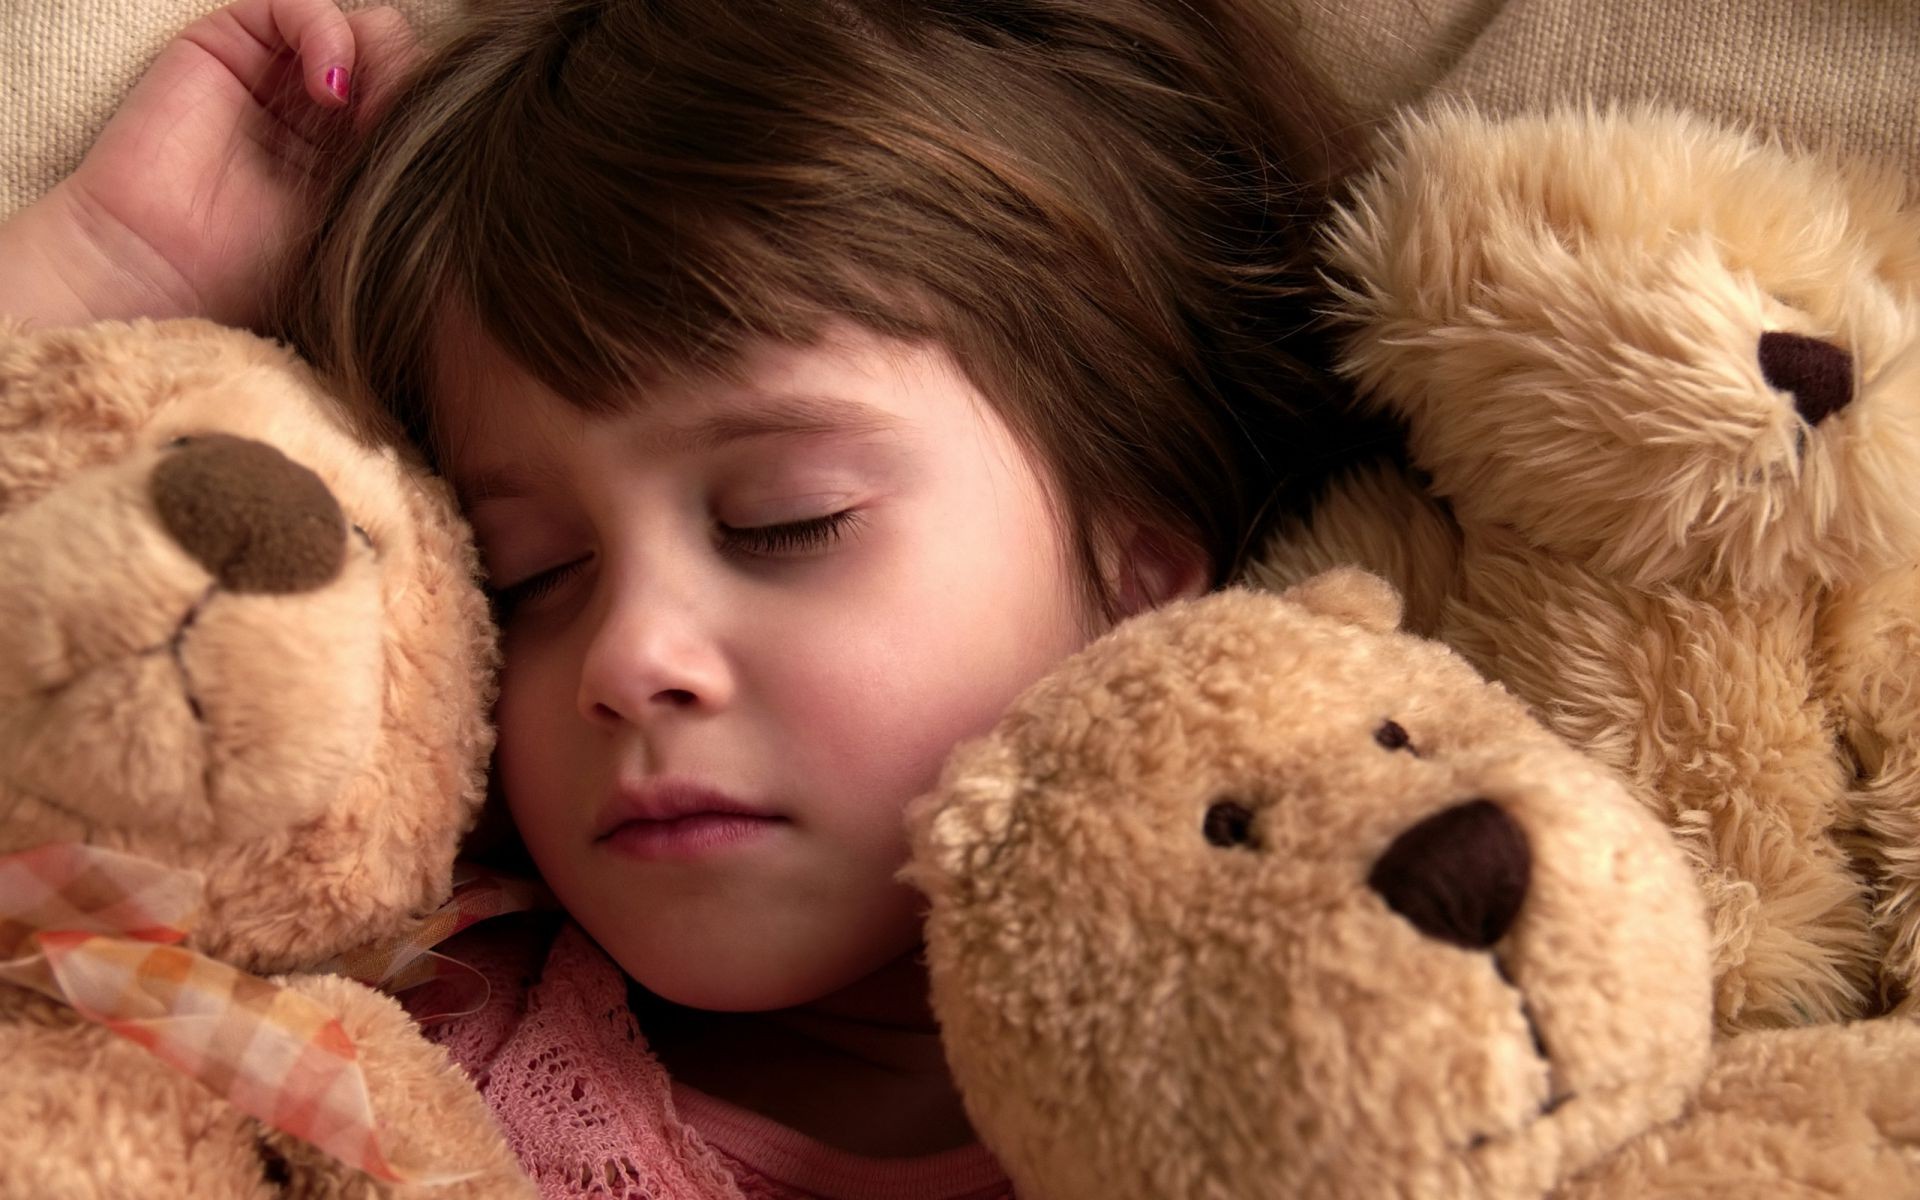 спящие дети тедди милые ребенок игрушка плюшевые мало мех пуховый один млекопитающее семья объятия ребенок удовольствие любовь сон